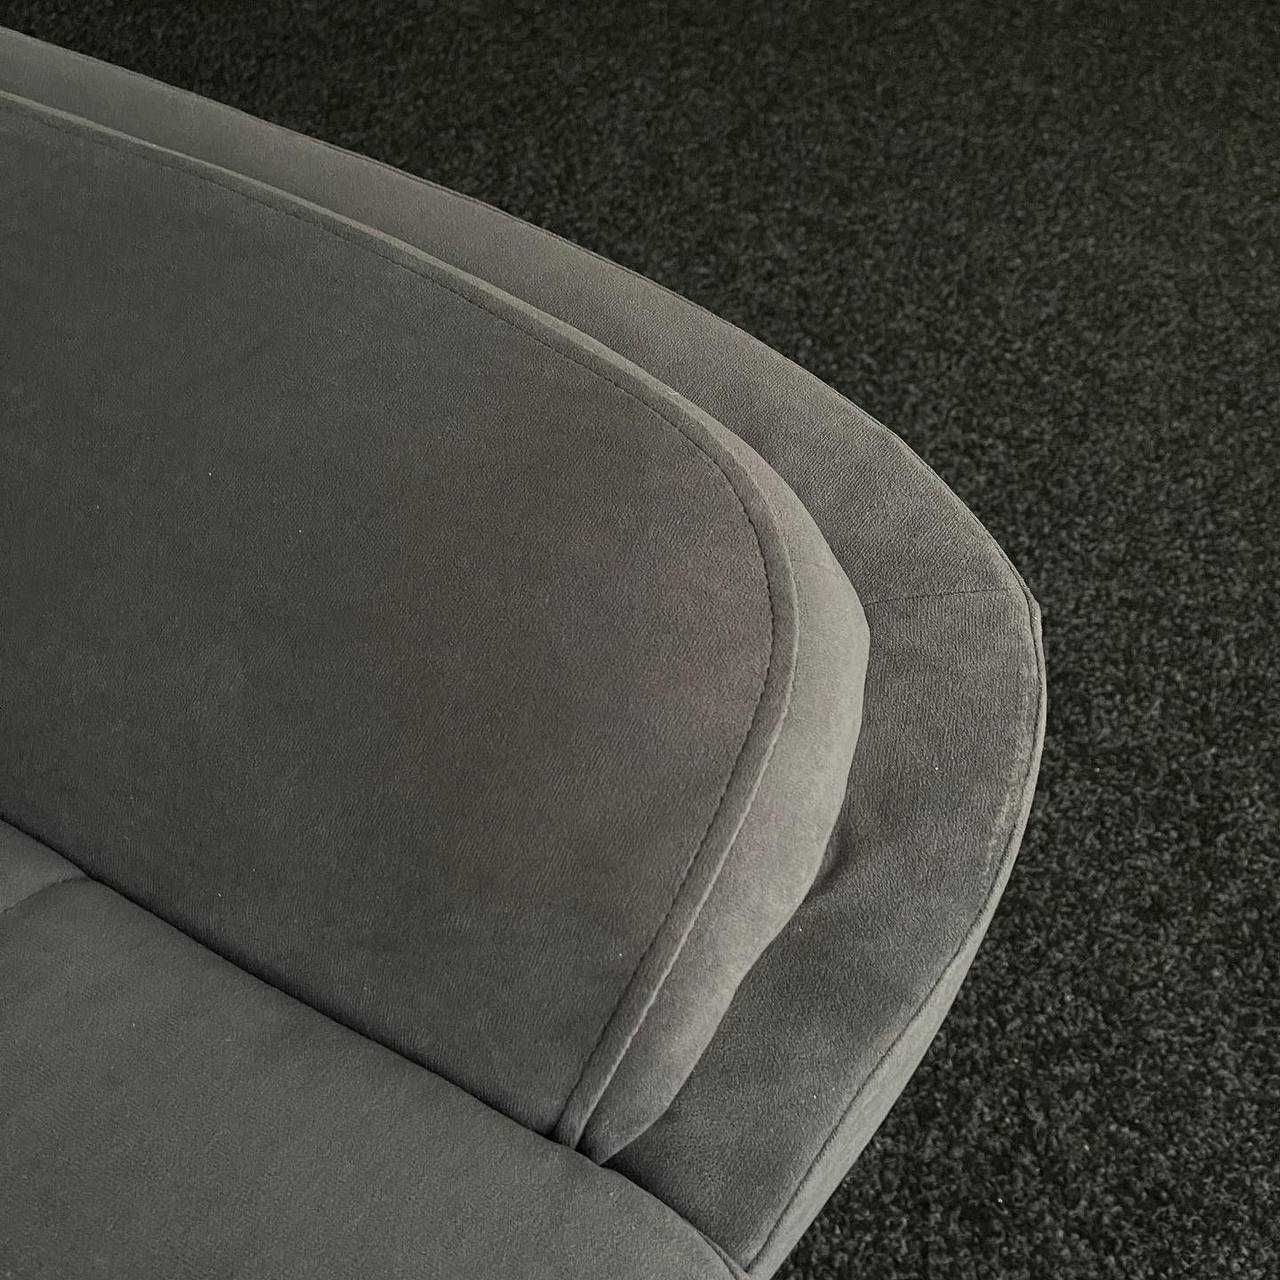 Новий розкладний диван в тканині п-подібної форми